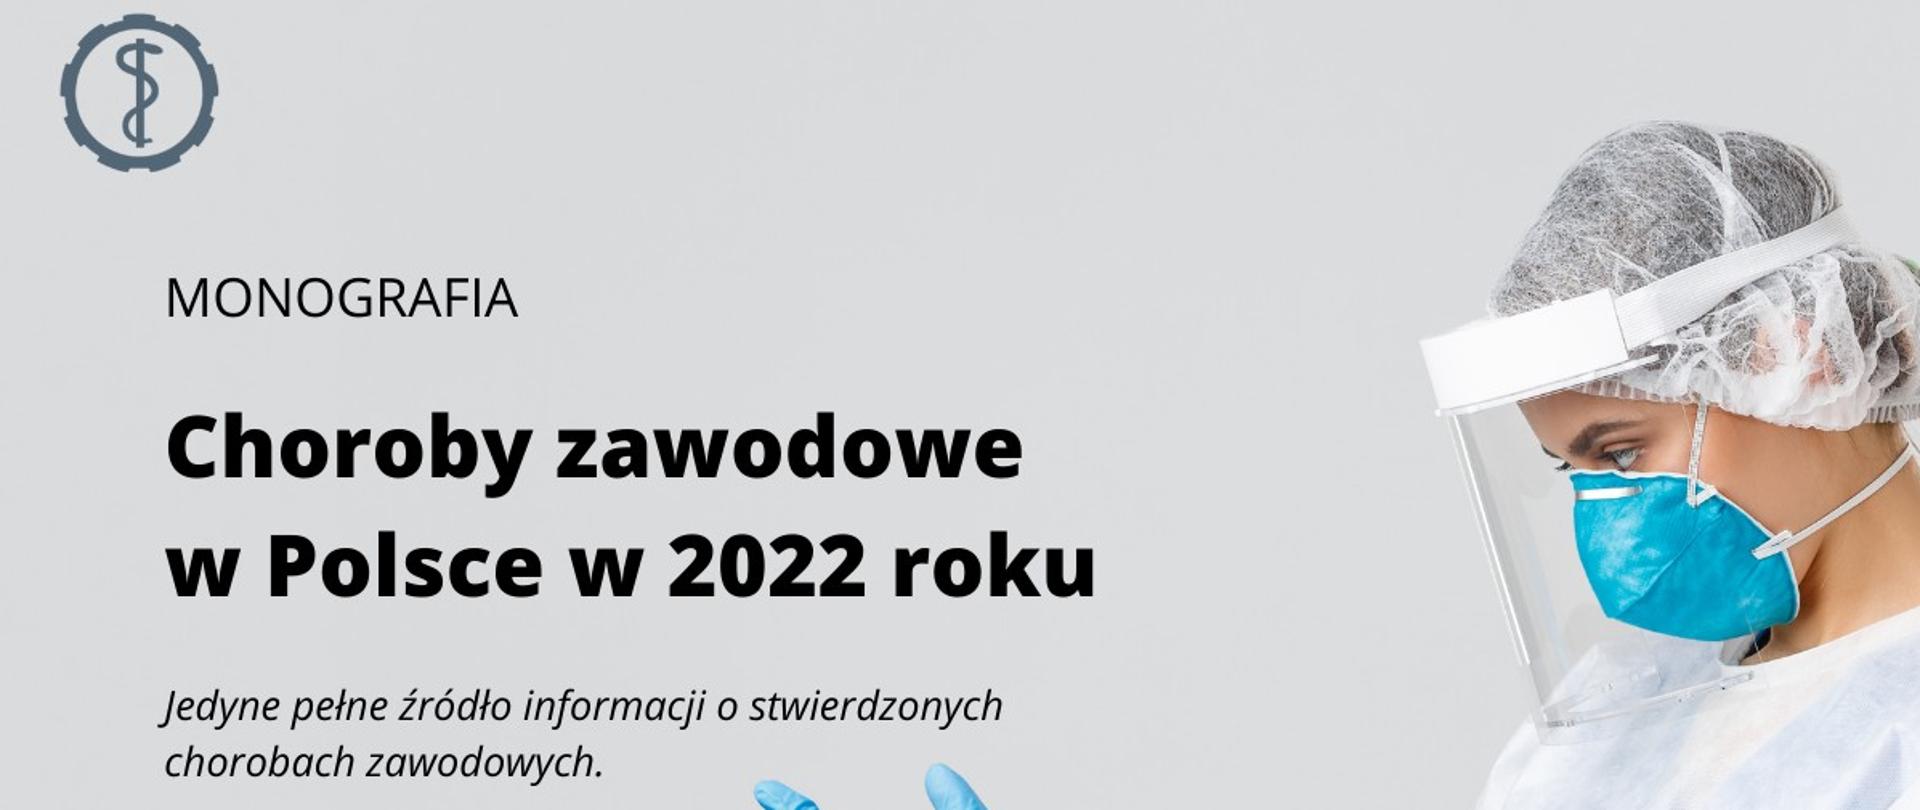 Choroby zawodowe w Polsce w 2022 roku